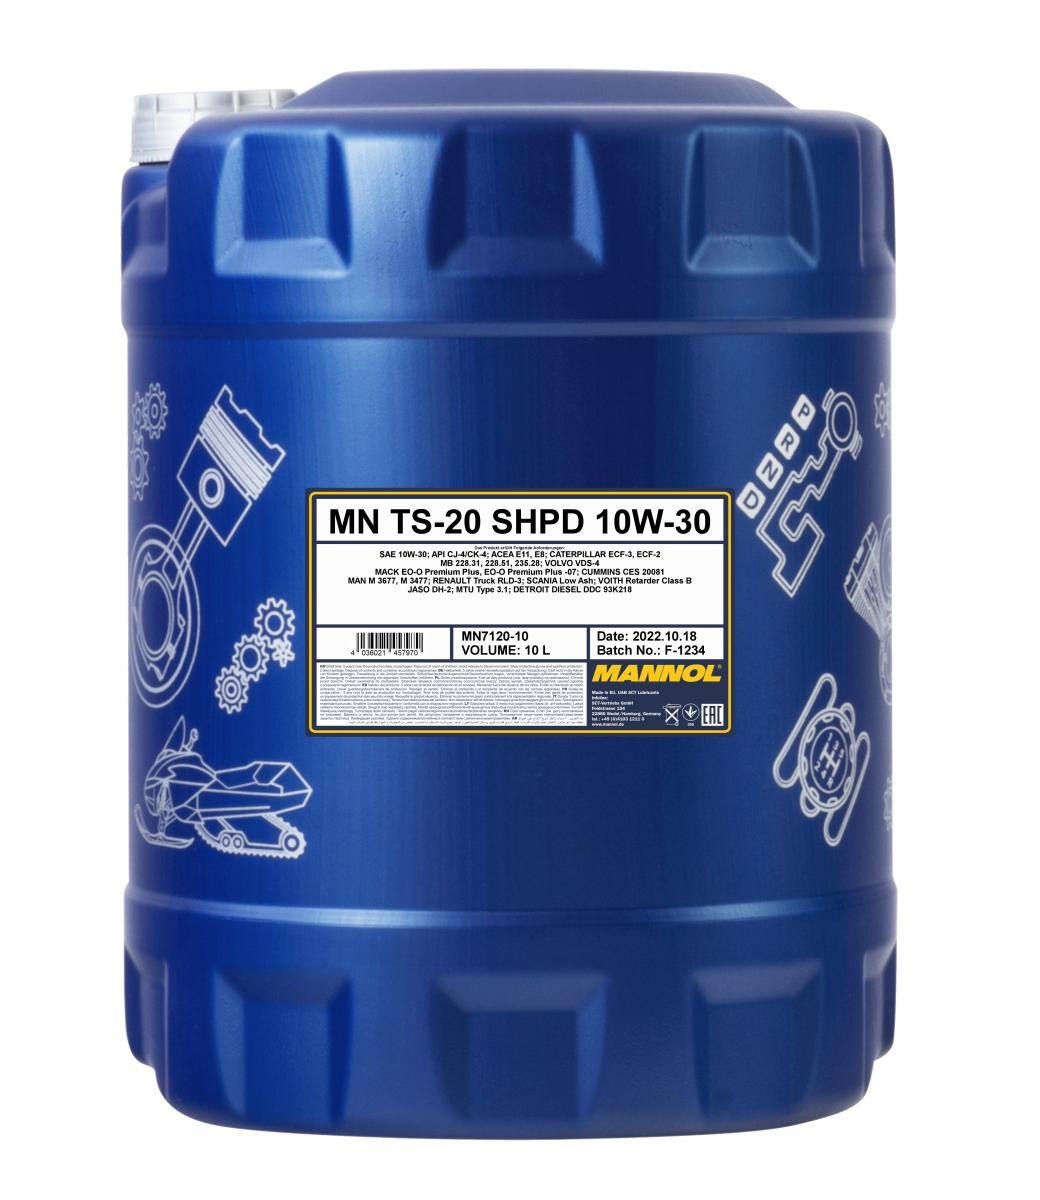 Car oil 10W-30 longlife diesel - MN7120-10 MANNOL TS-20, SHPD